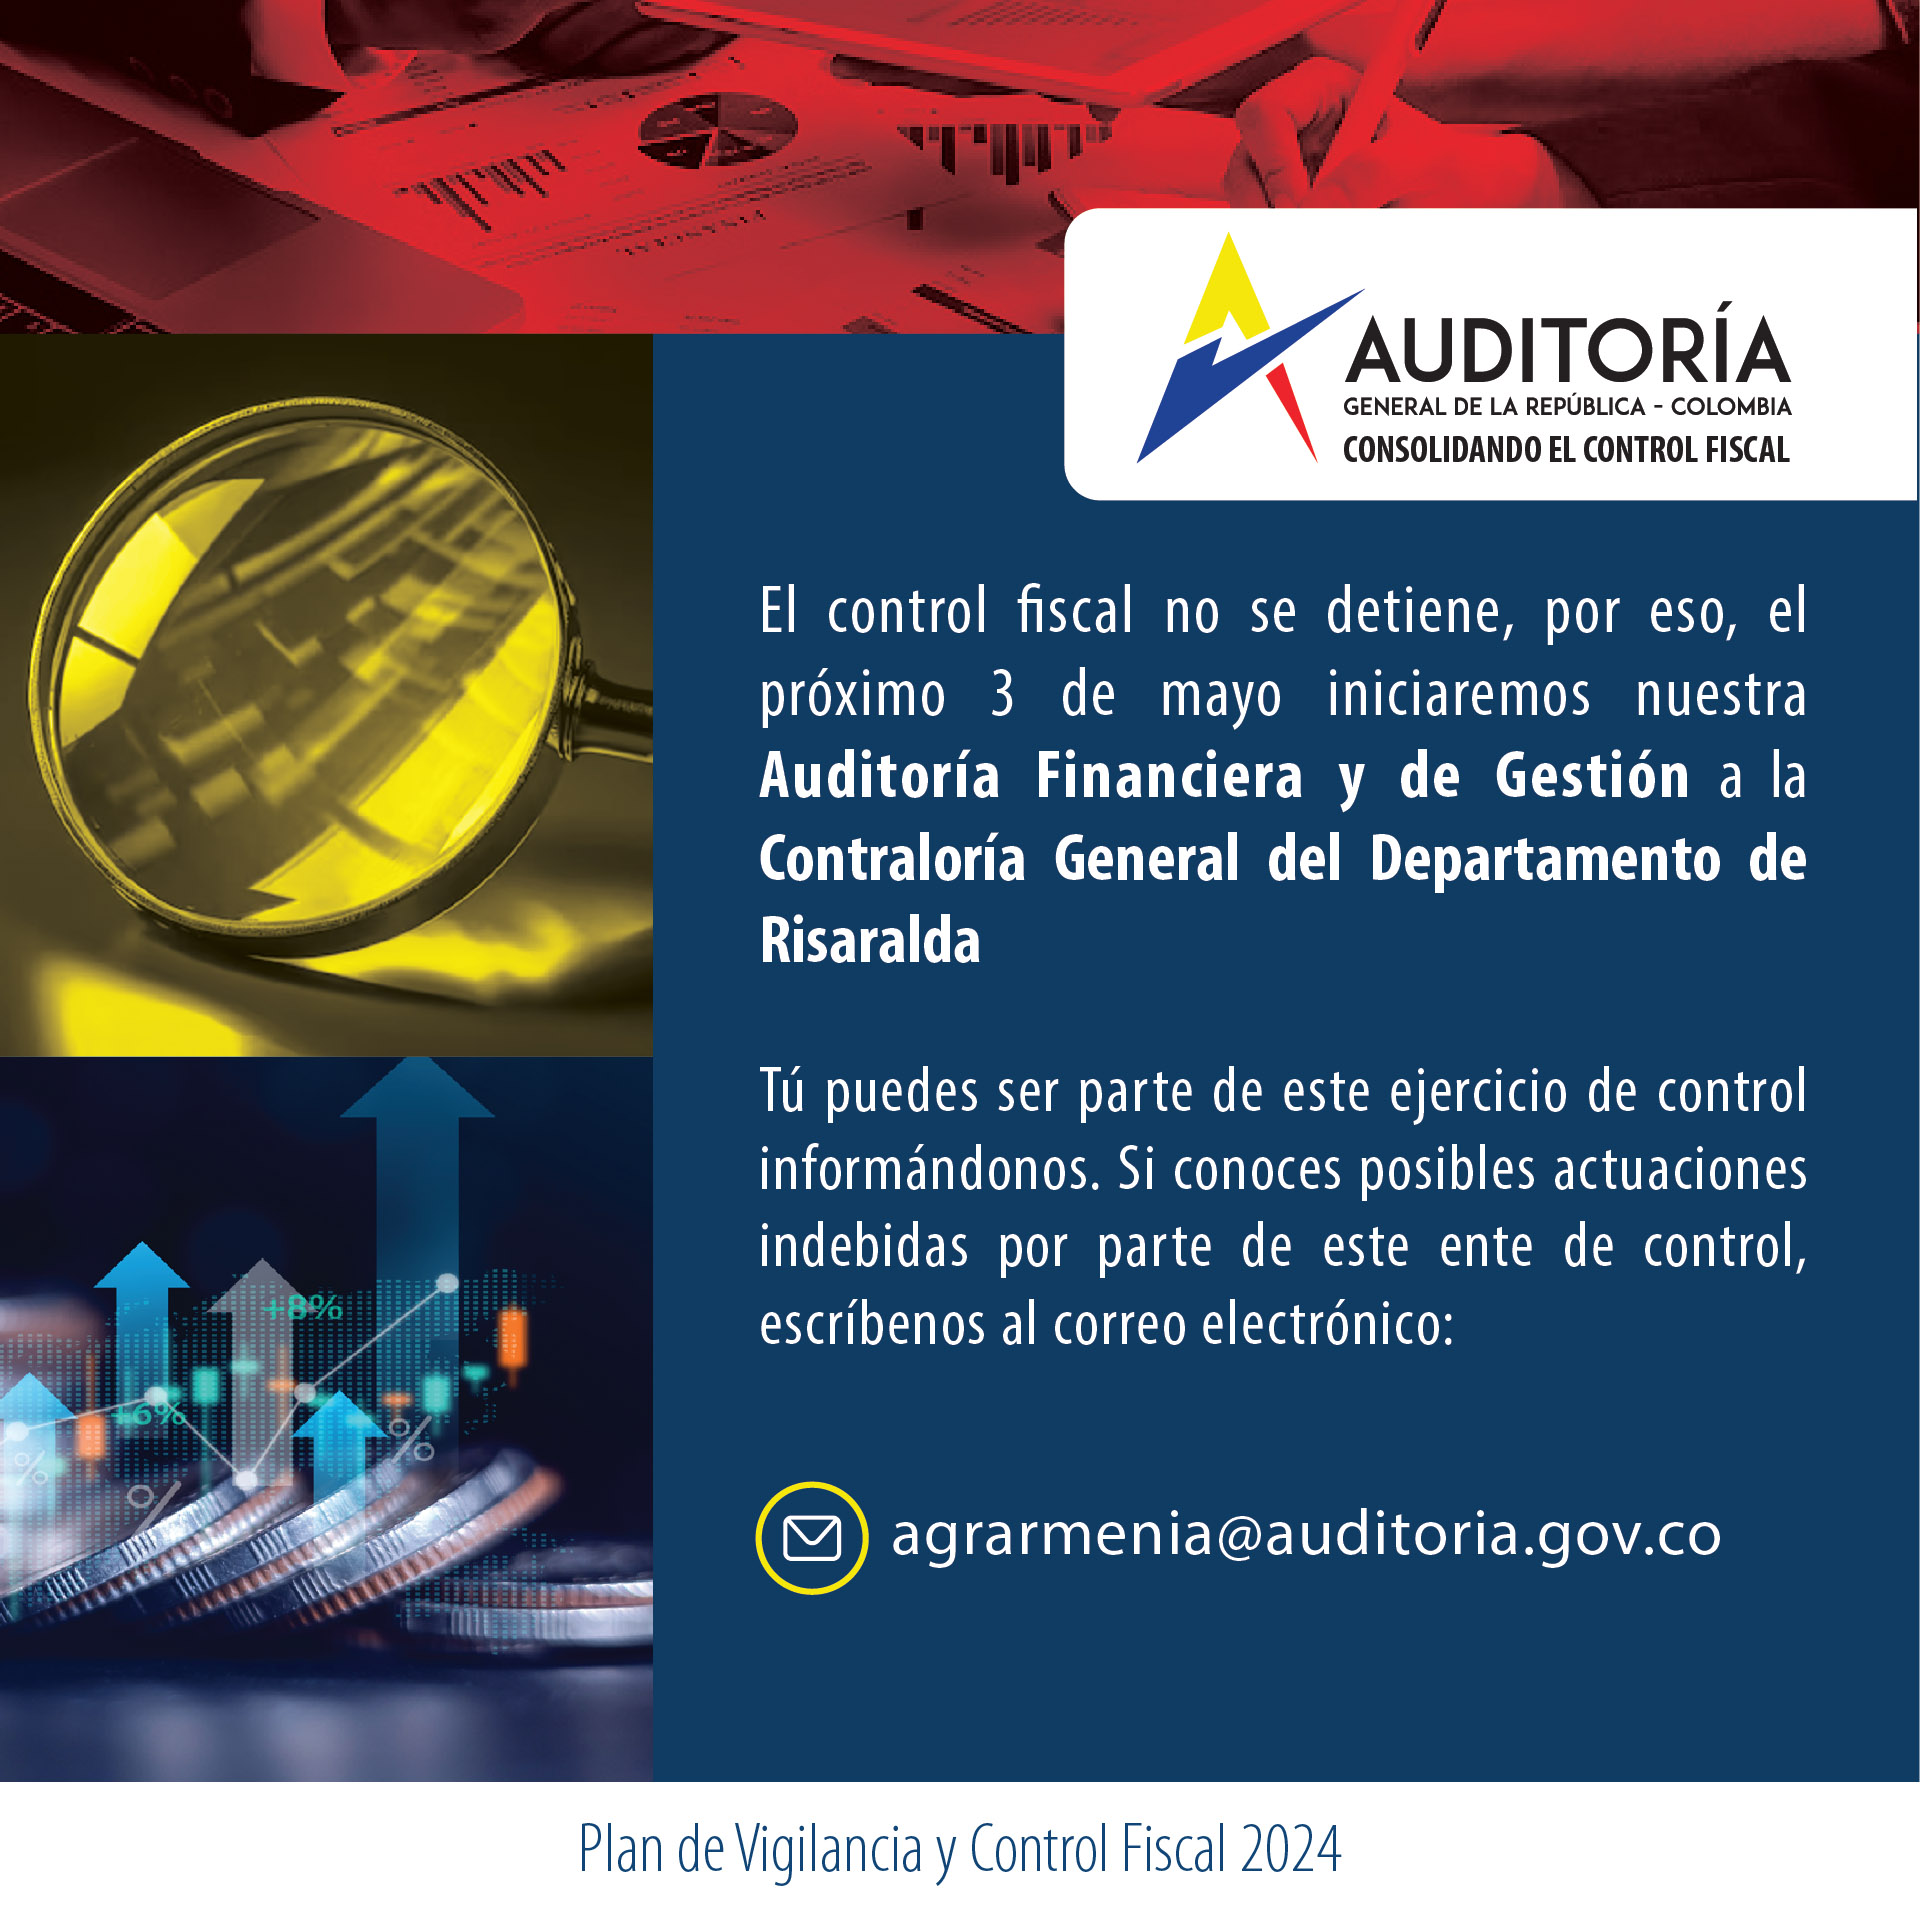 Invitación a ciudadanía a brindar información para Auditoría Financiera y de Gestión a Contraloría de Risaralda